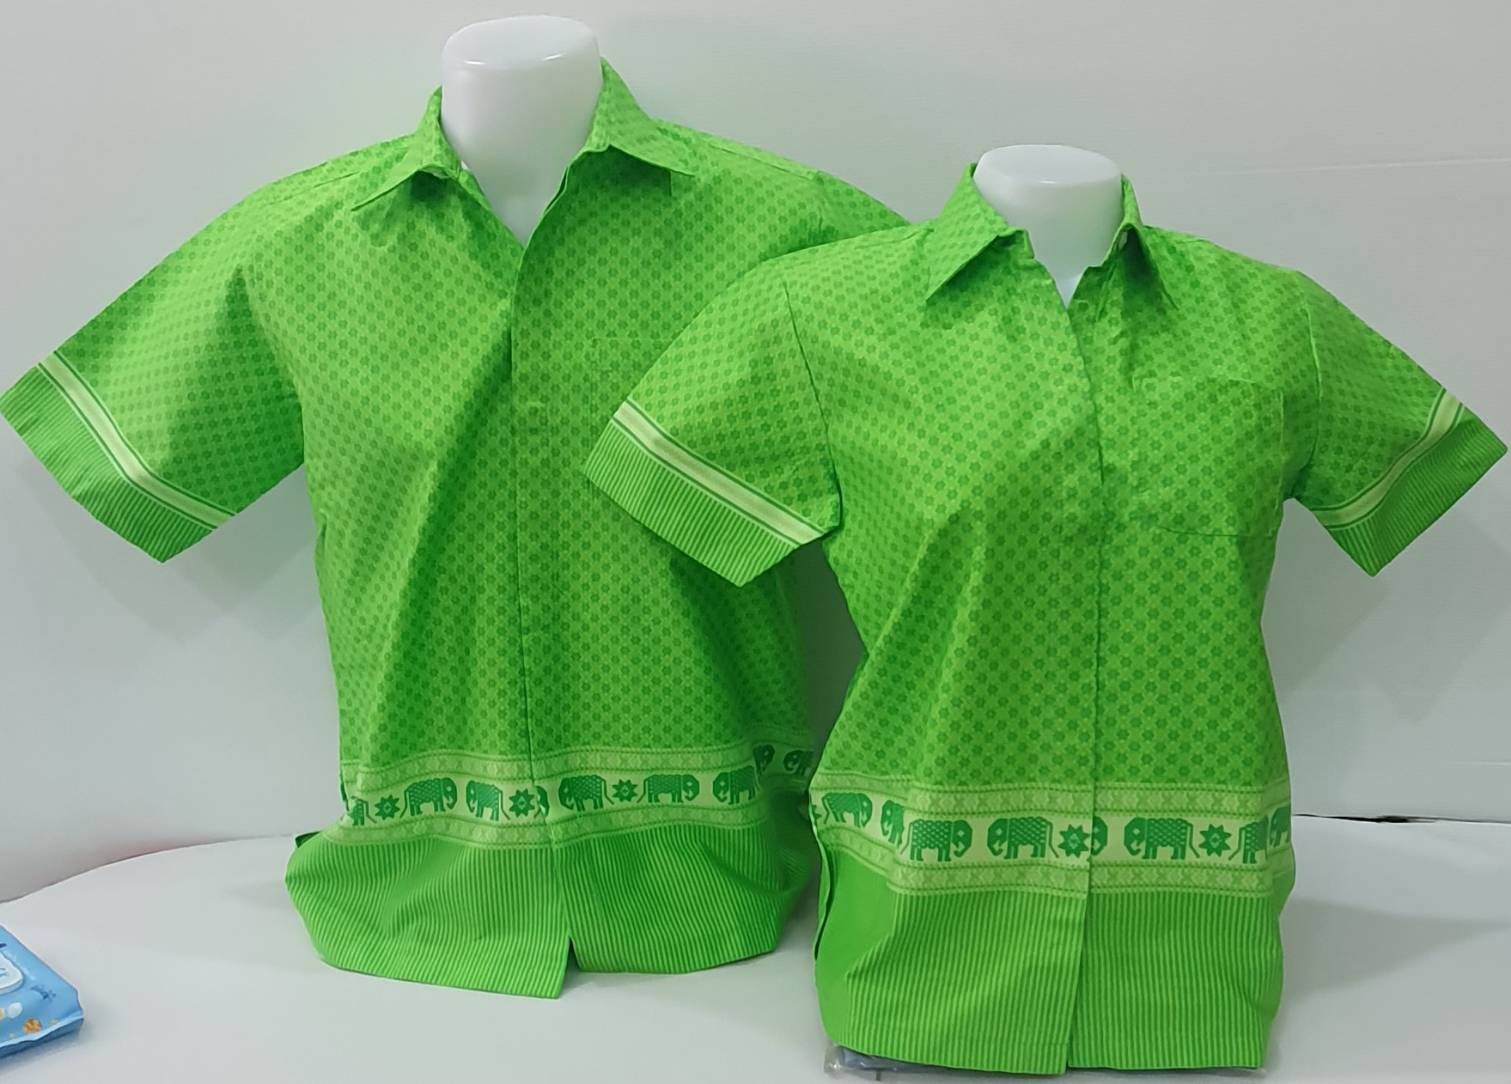 เสื้อเชิ๊ตอัดกาว - สีเขียว ลายไทยเชิงช้างสุโขทัย ผู้ชาย/ผู้หญิง